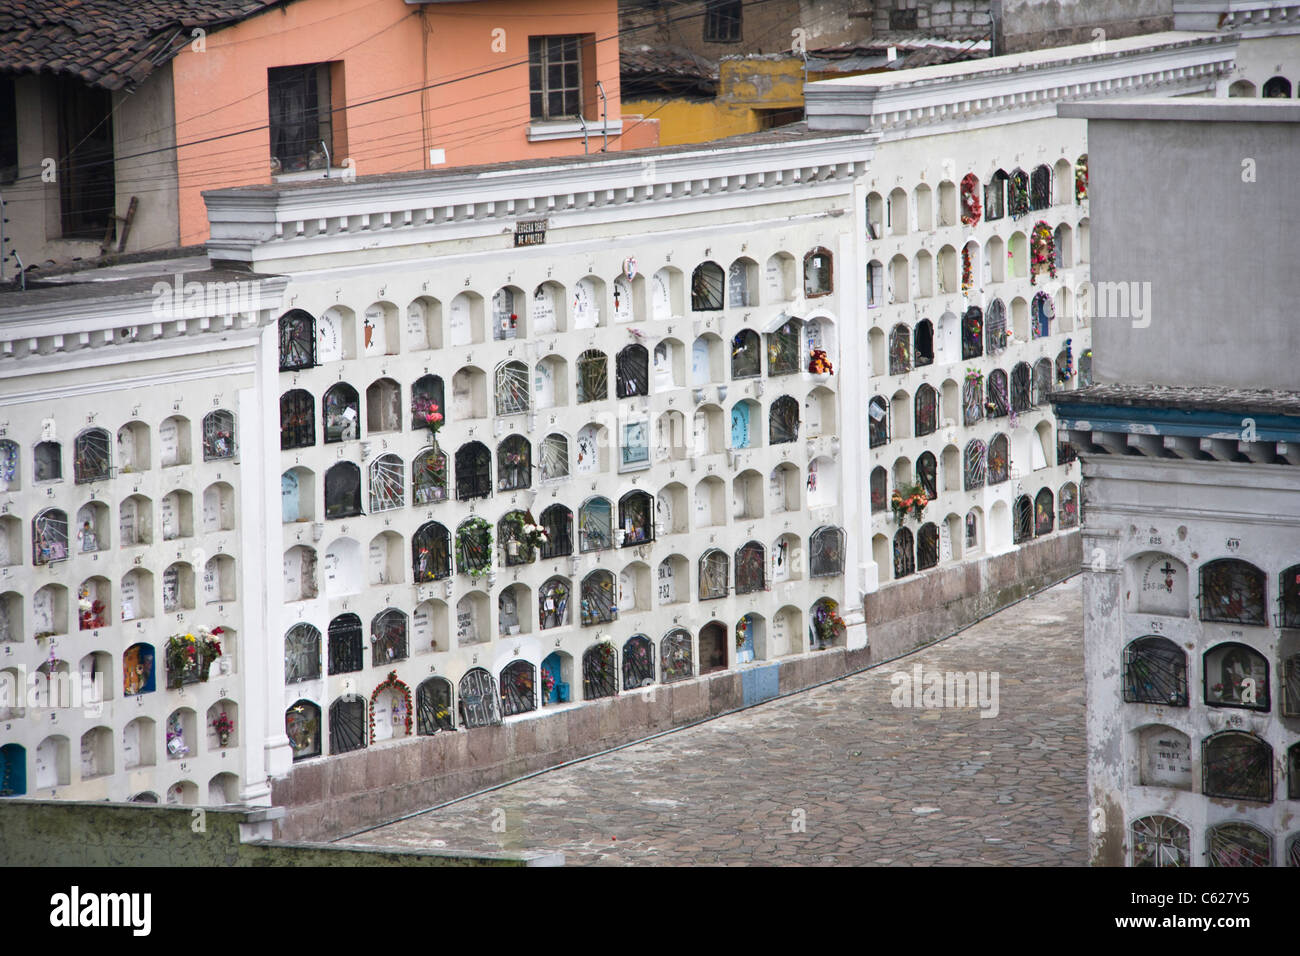 Friedhof Gewölbe in Quito, Ecuador. Raum ist mit einem Aufschlag, so Bestattung in gestapelten Gewölben. Stockfoto